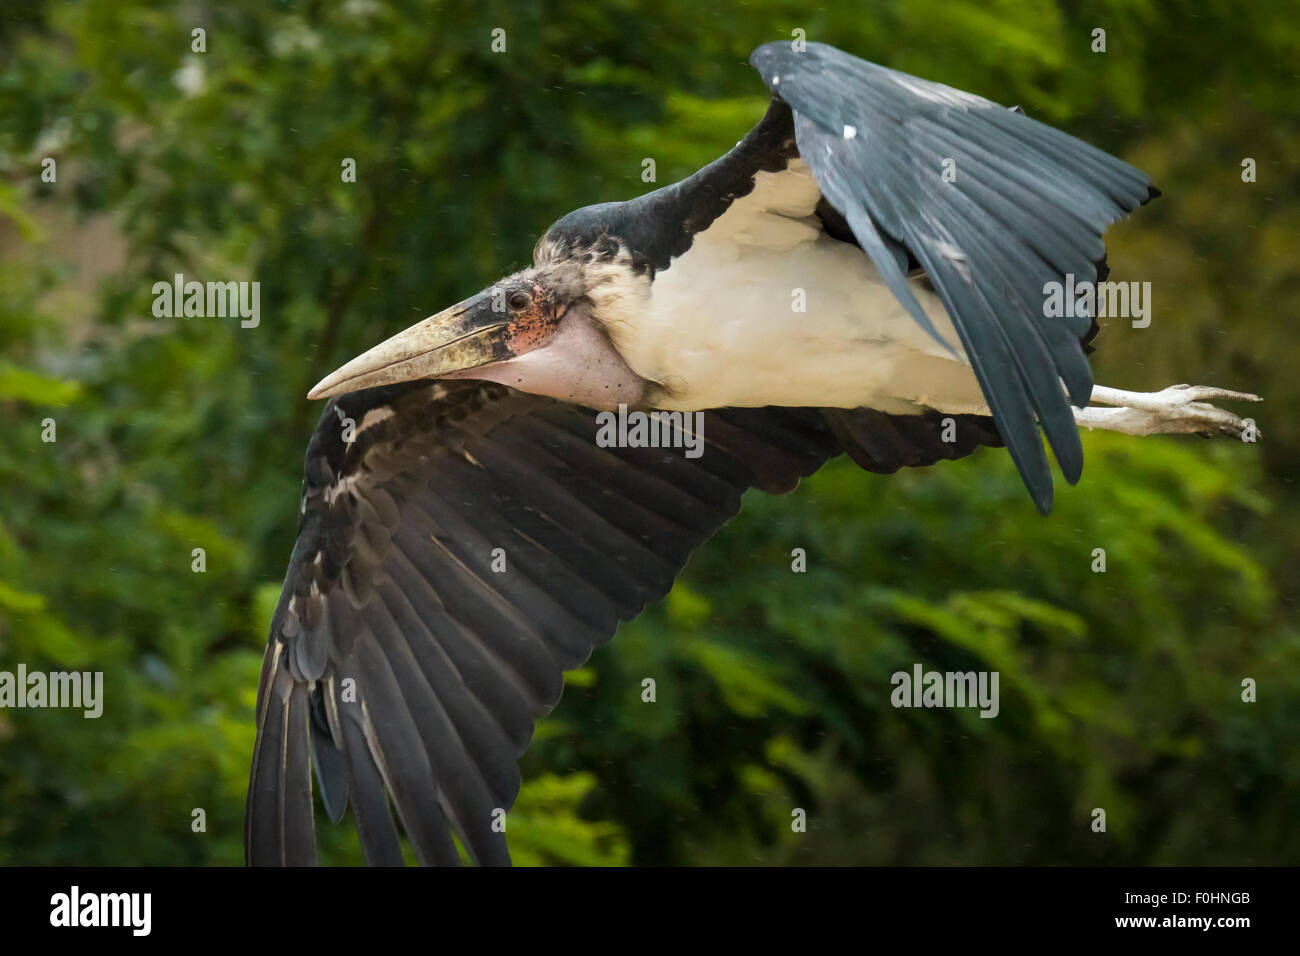 Primer plano de un pájaro en pleno vuelo cigüeña Marabú Foto de stock